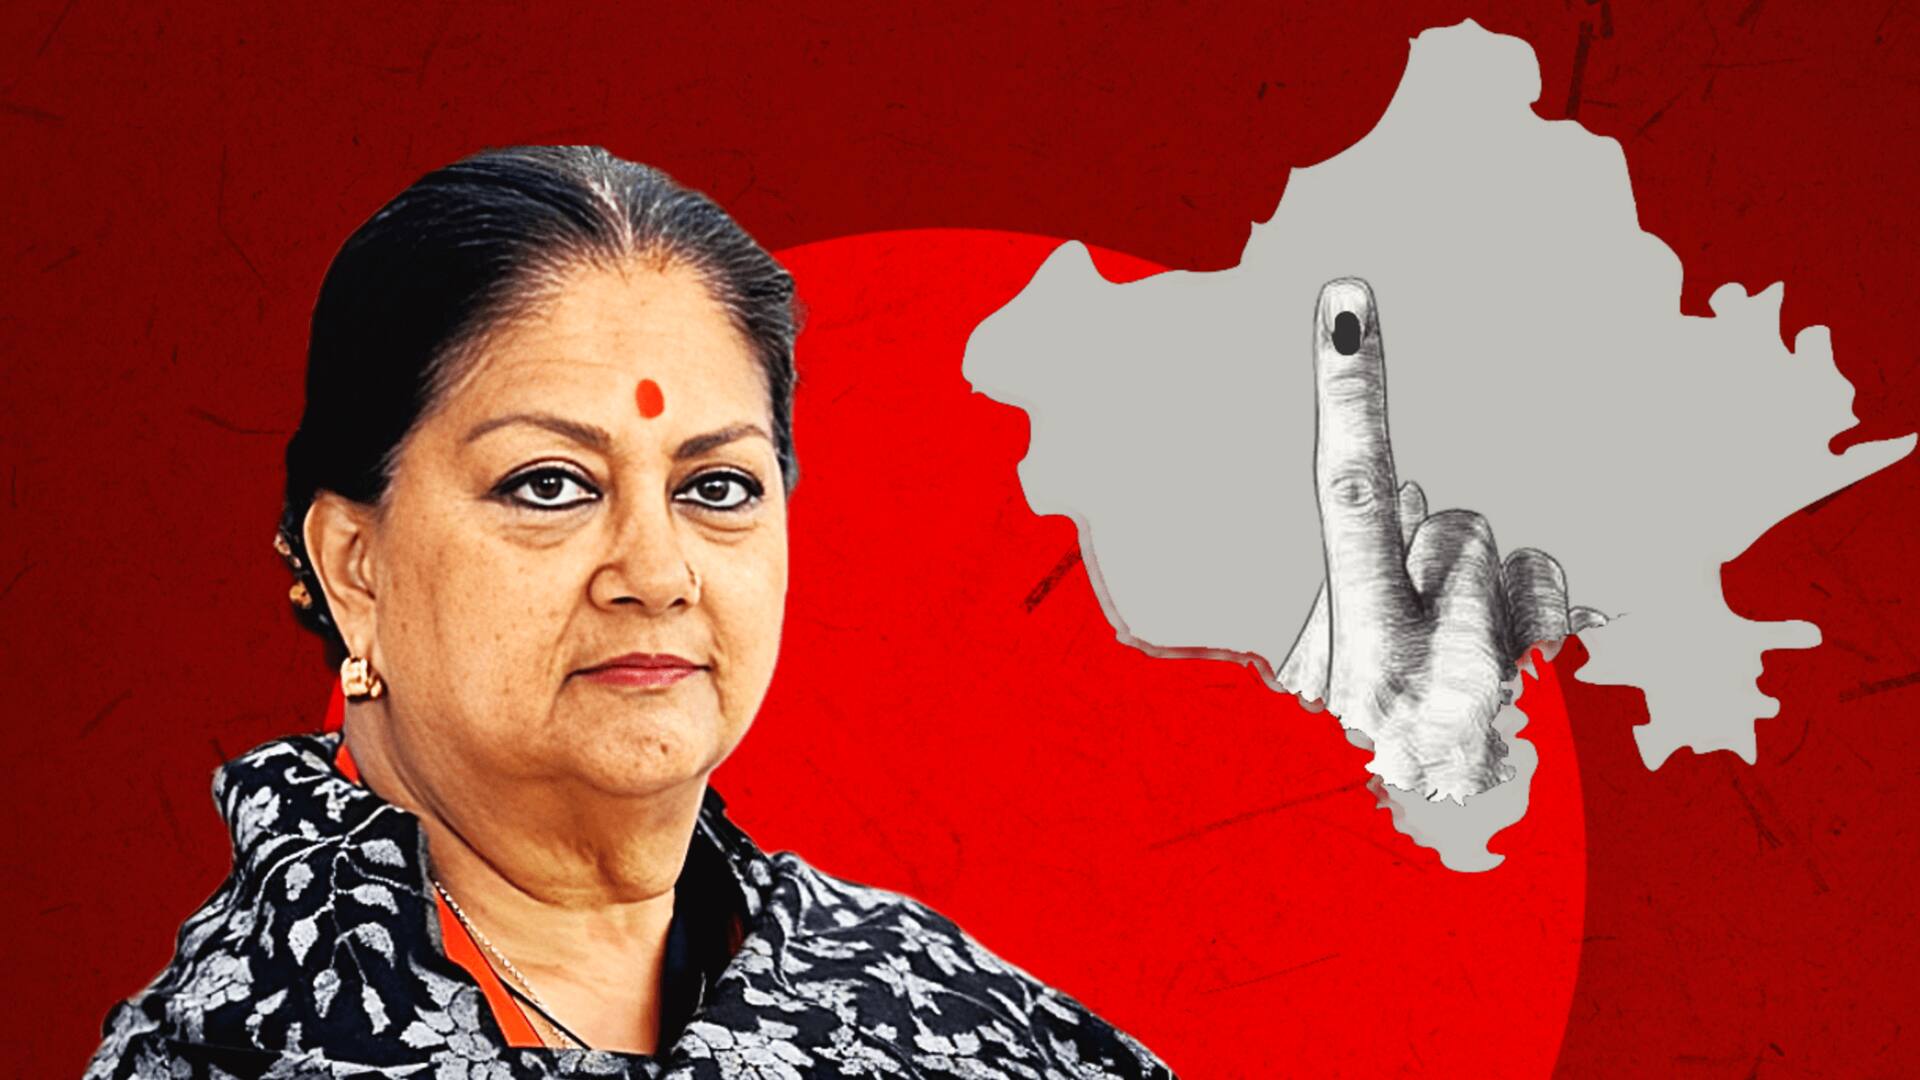 राजस्थान में भाजपा की मुसीबतें बढ़ीं, 1 साल के लिए मुख्यमंत्री पद मांग रहीं वसुंधरा- रिपोर्ट